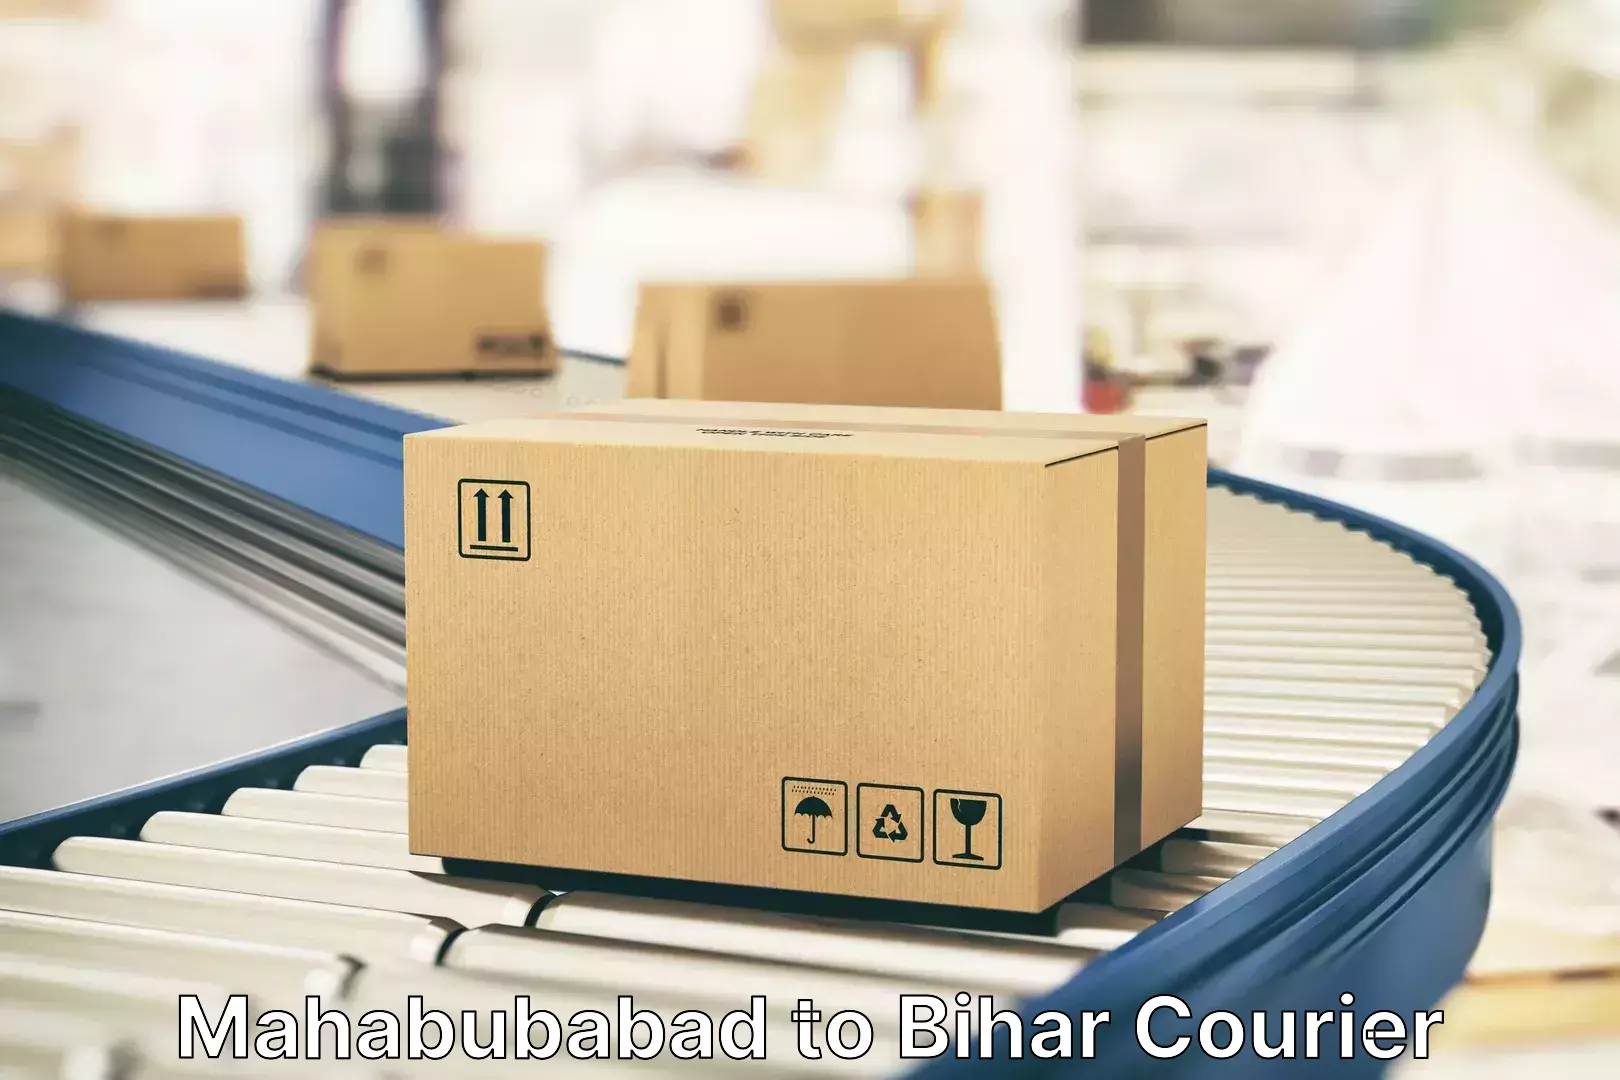 Baggage courier service Mahabubabad to Katihar